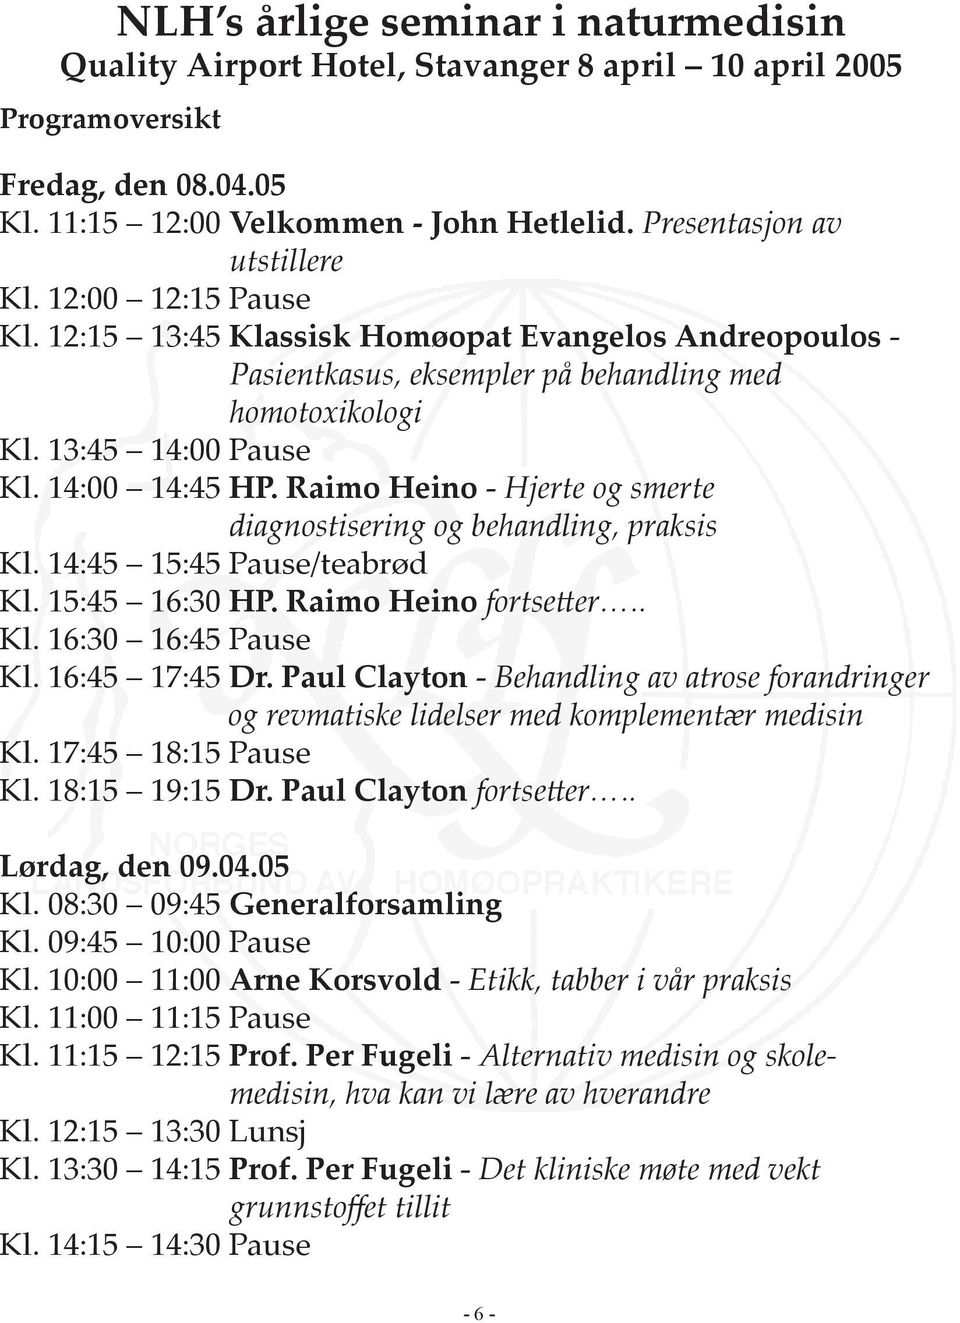 14:00 14:45 HP. Raimo Heino - Hjerte og smerte diagnostisering og behandling, praksis Kl. 14:45 15:45 Pause/teabrød Kl. 15:45 16:30 HP. Raimo Heino fortse er.. Kl. 16:30 16:45 Pause Kl.